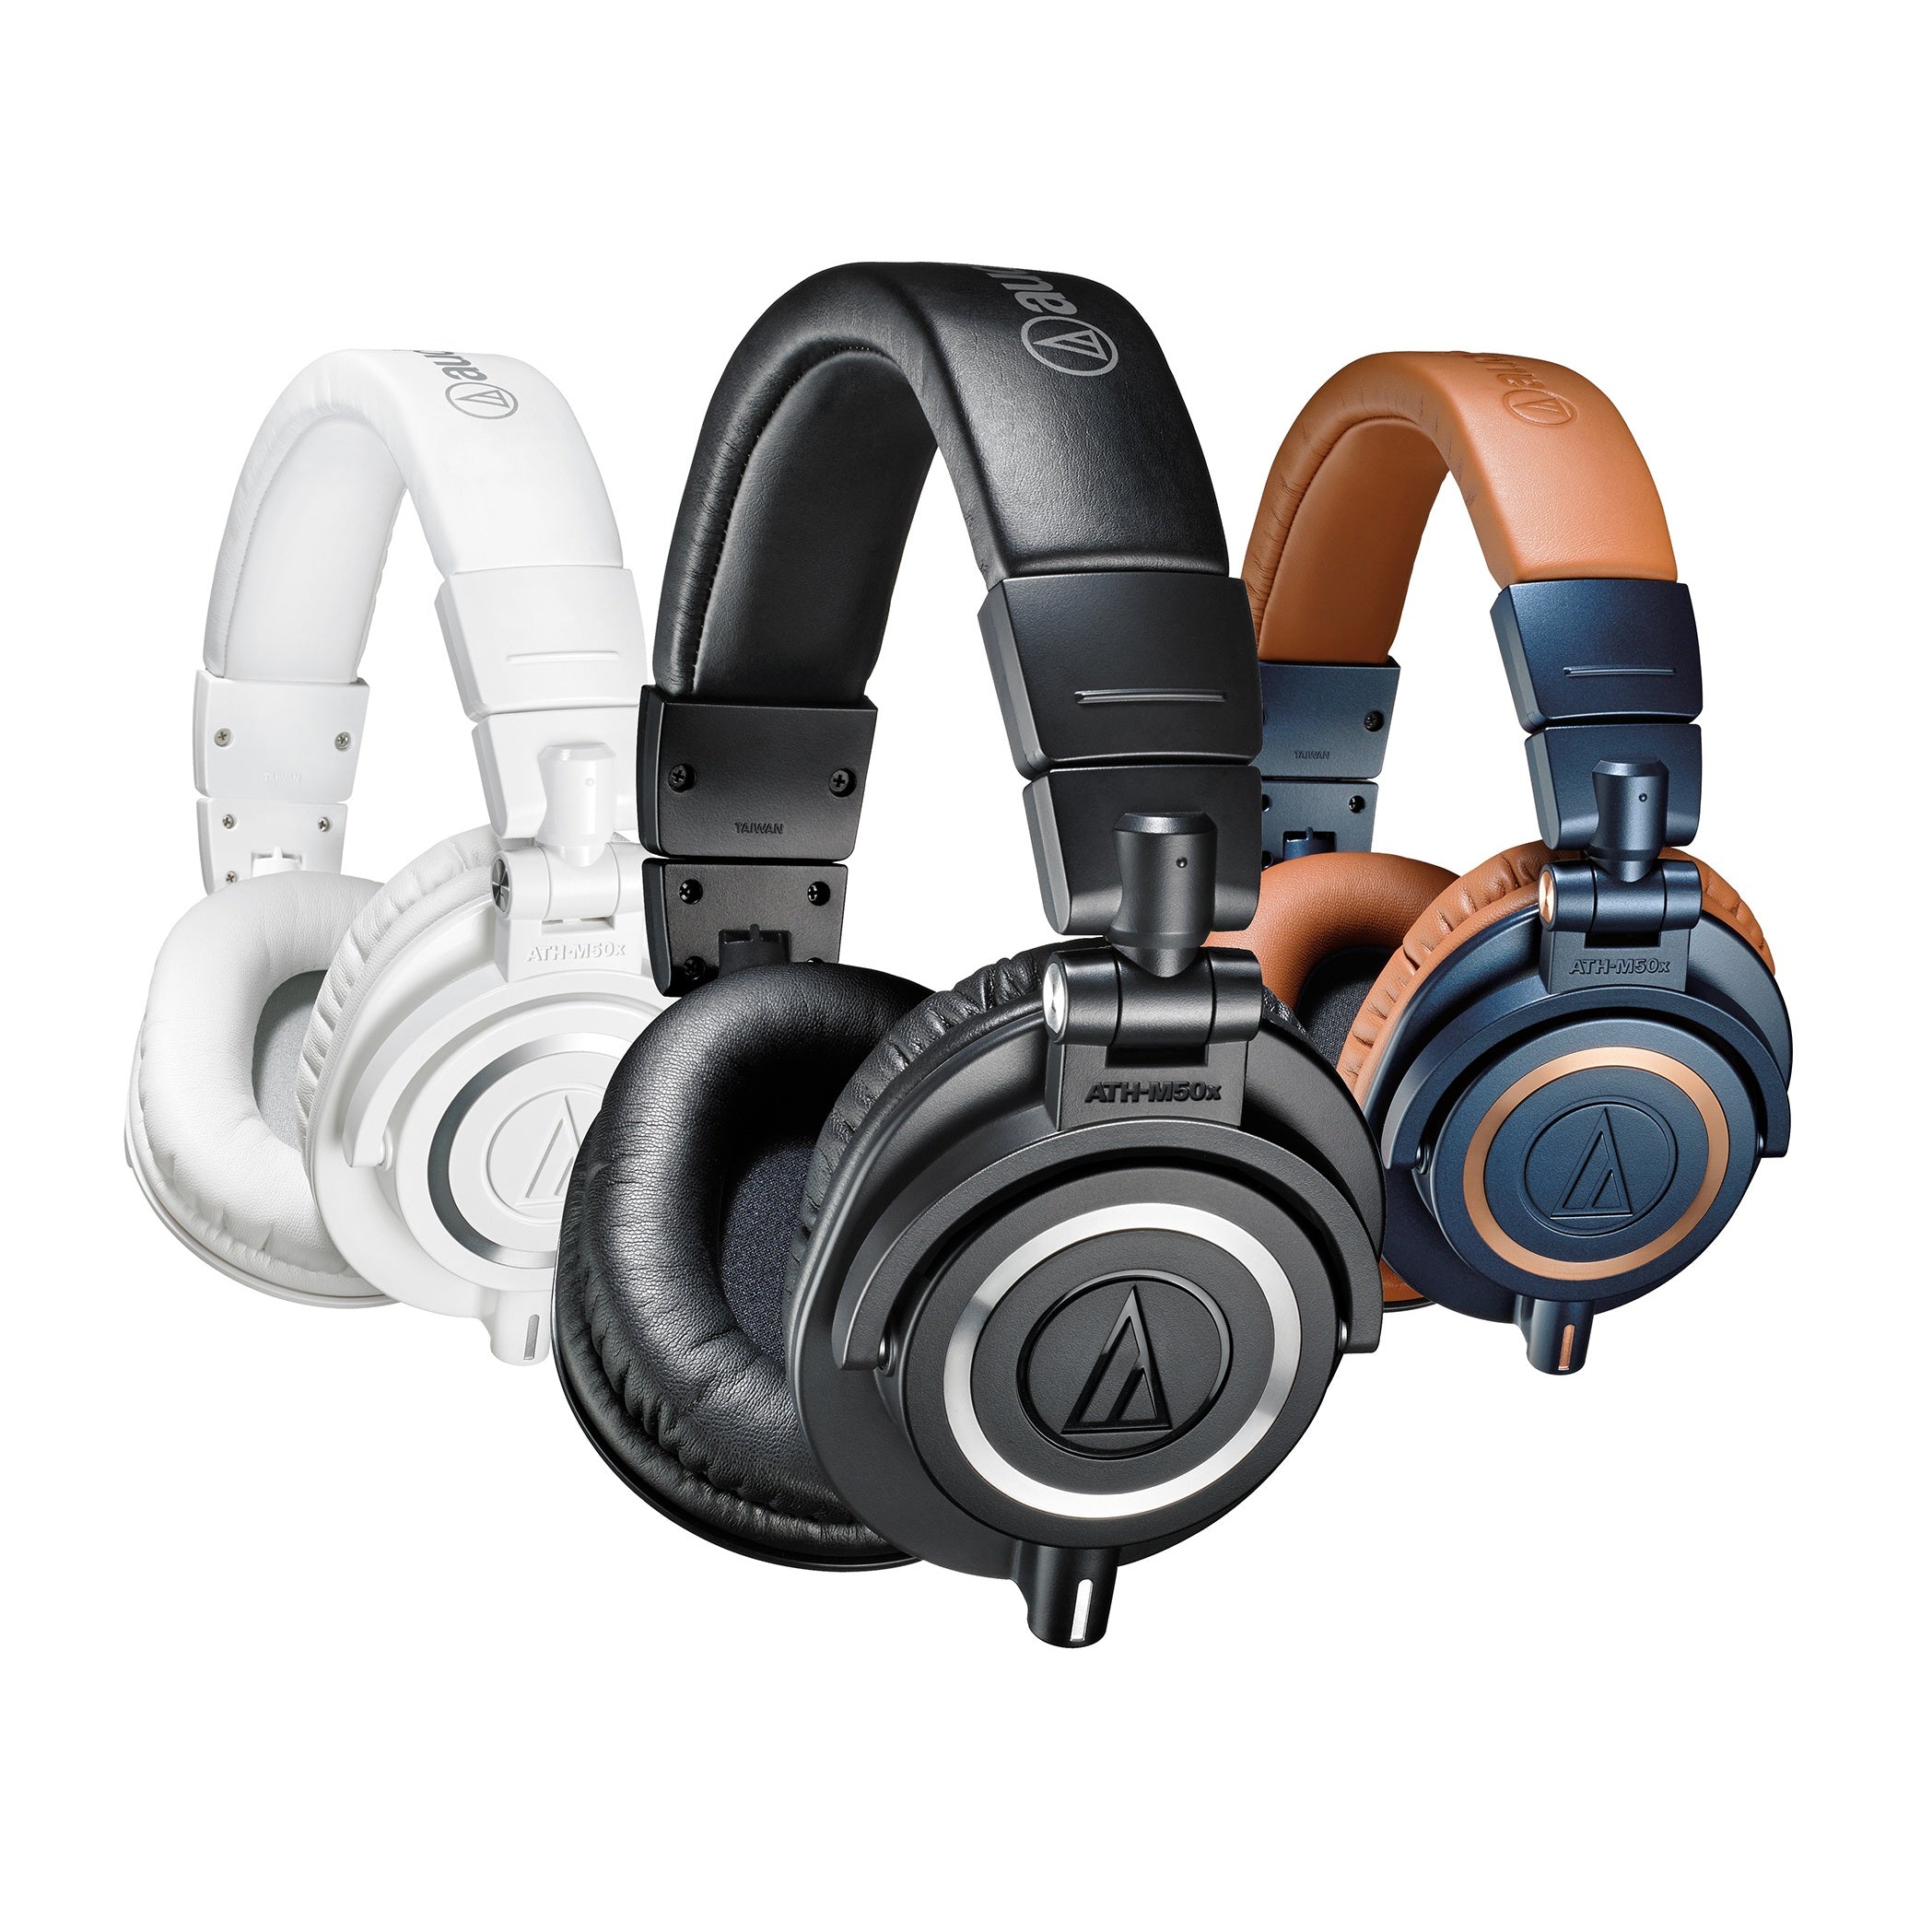 Las 5 razones principales para comprar el Audio-Technica ATH-M50x